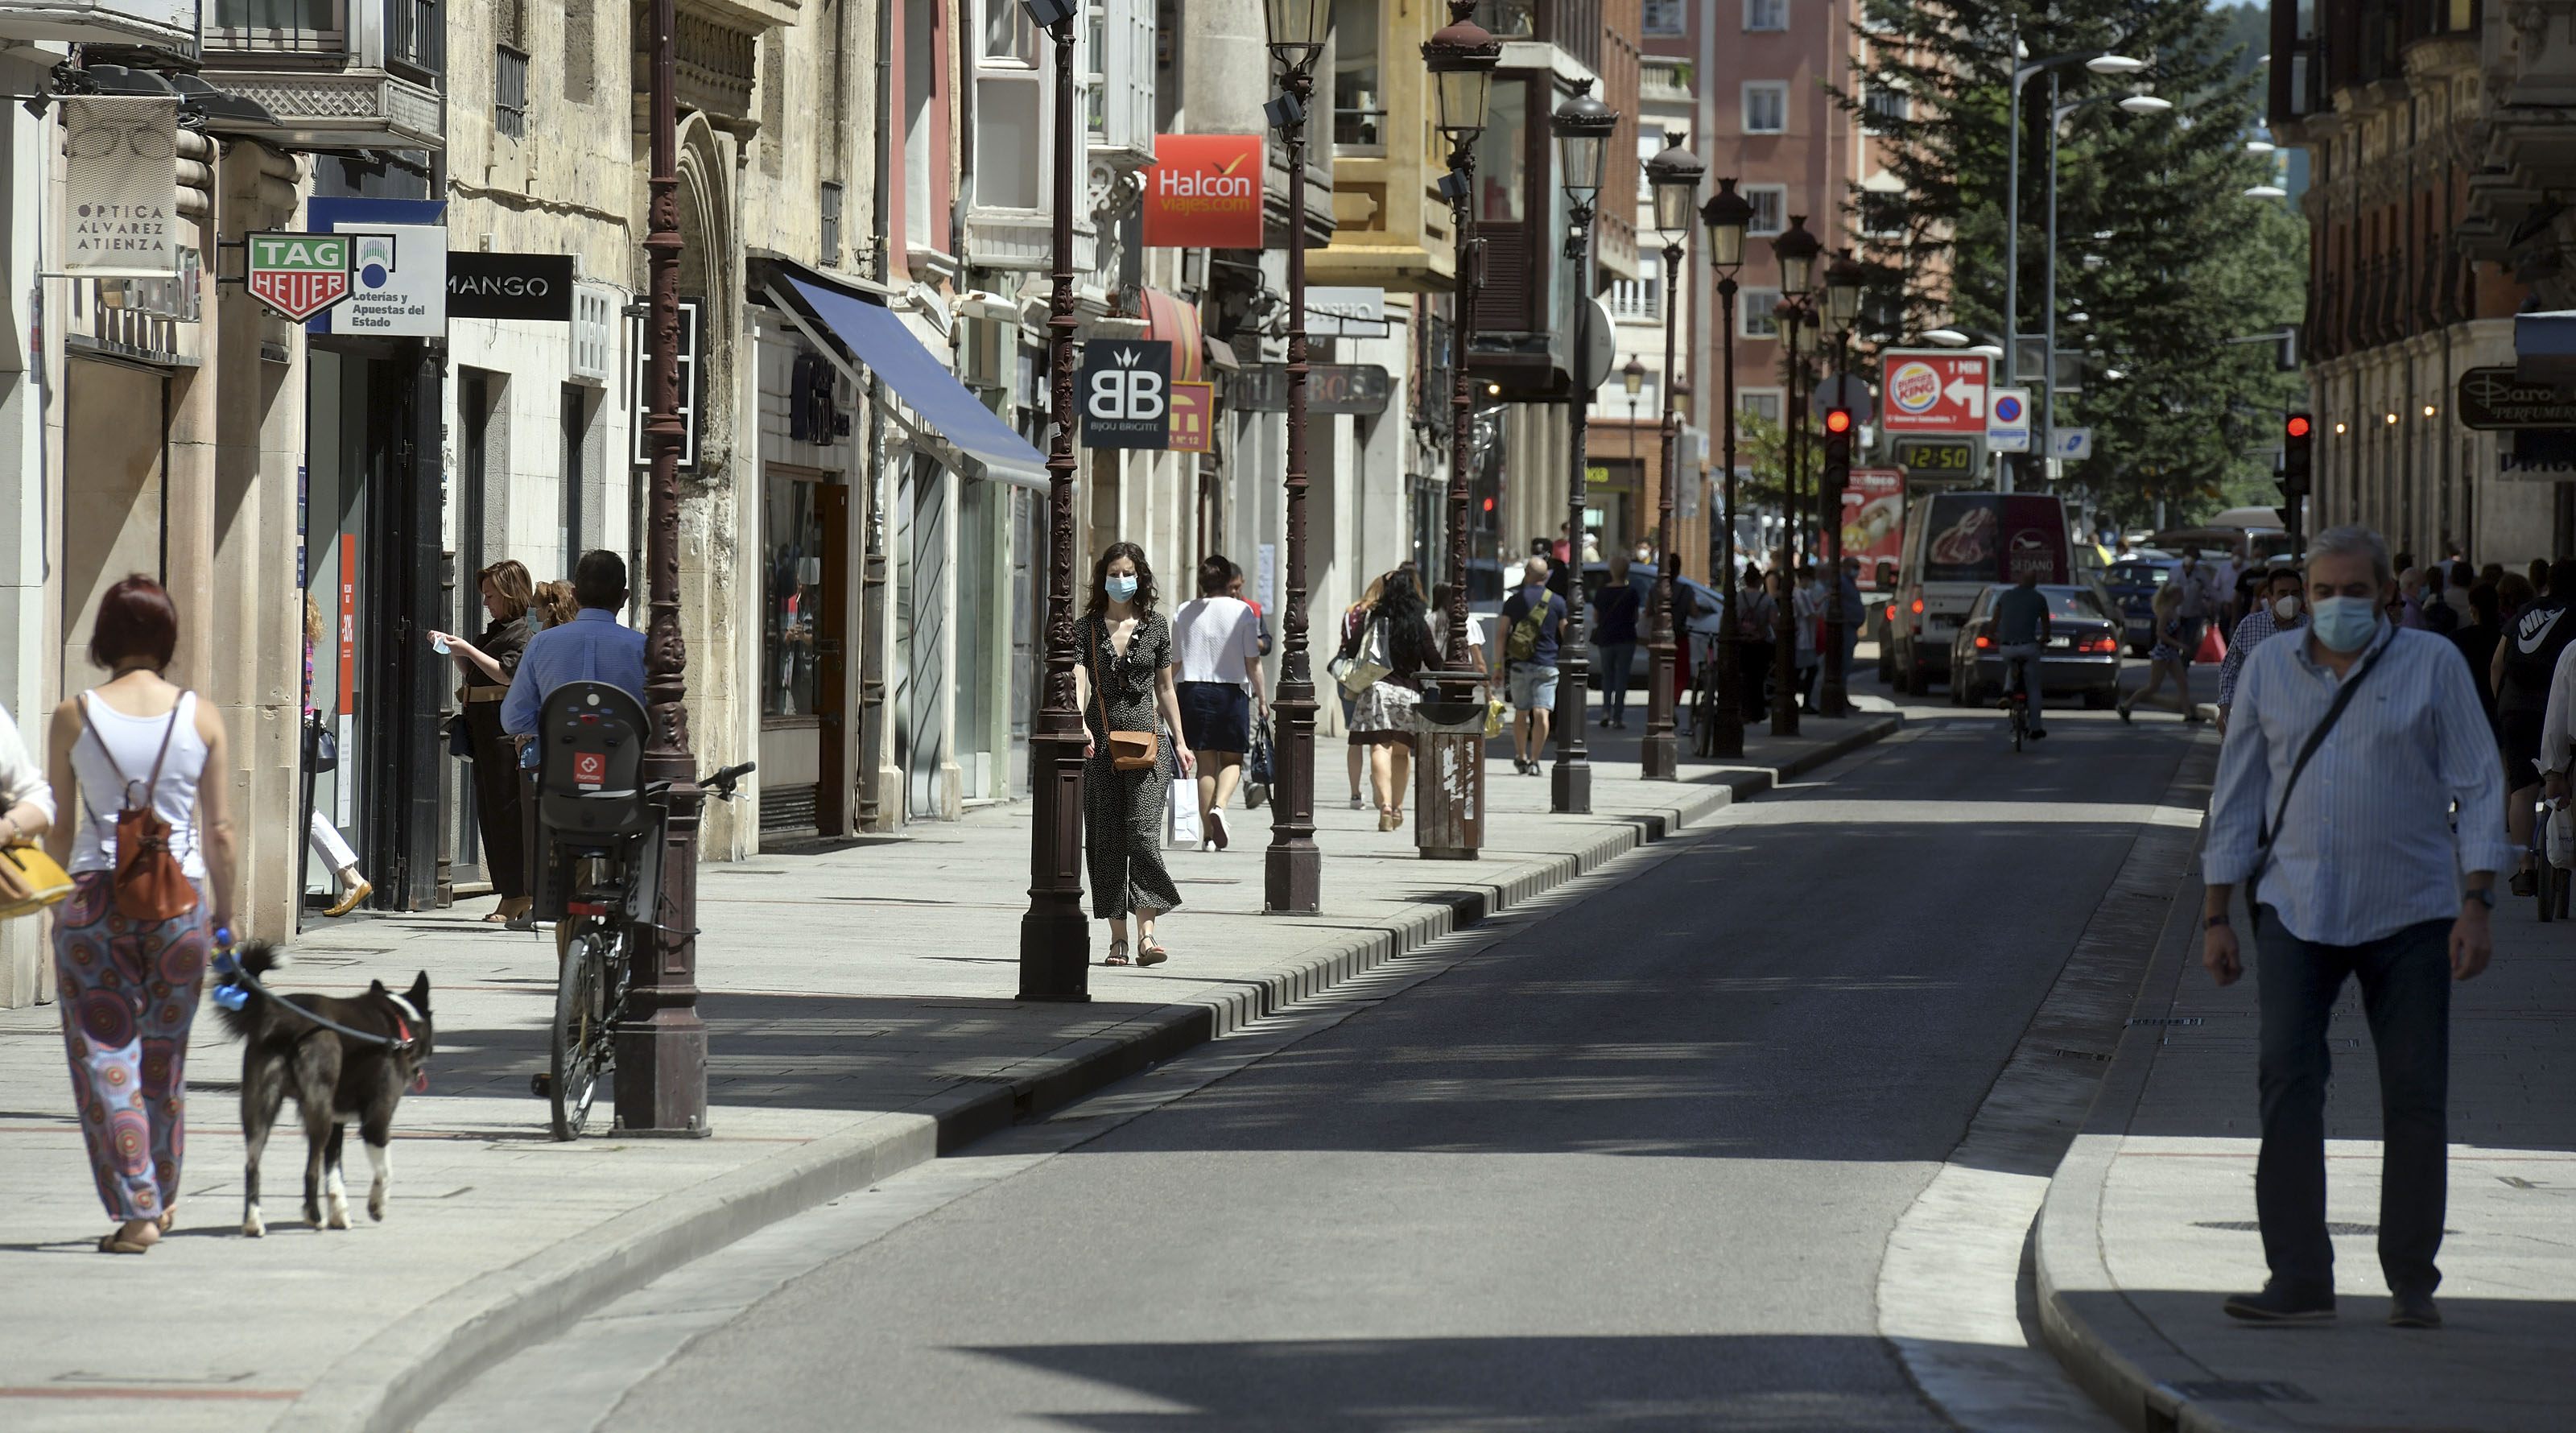 Imagen principal - Las calles de Burgos comienzan a respirar normalidad en la primera semana en fase 1. 